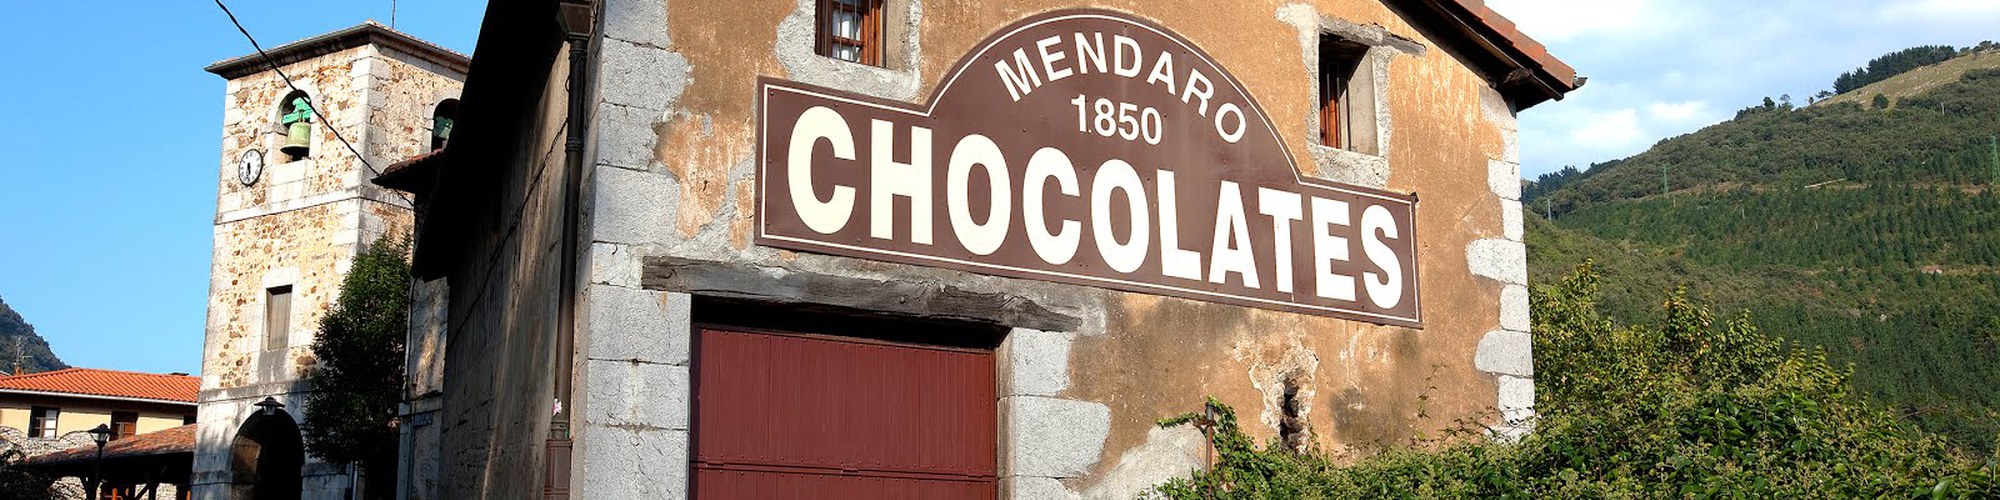 MENDARO: le délicieux chocolat